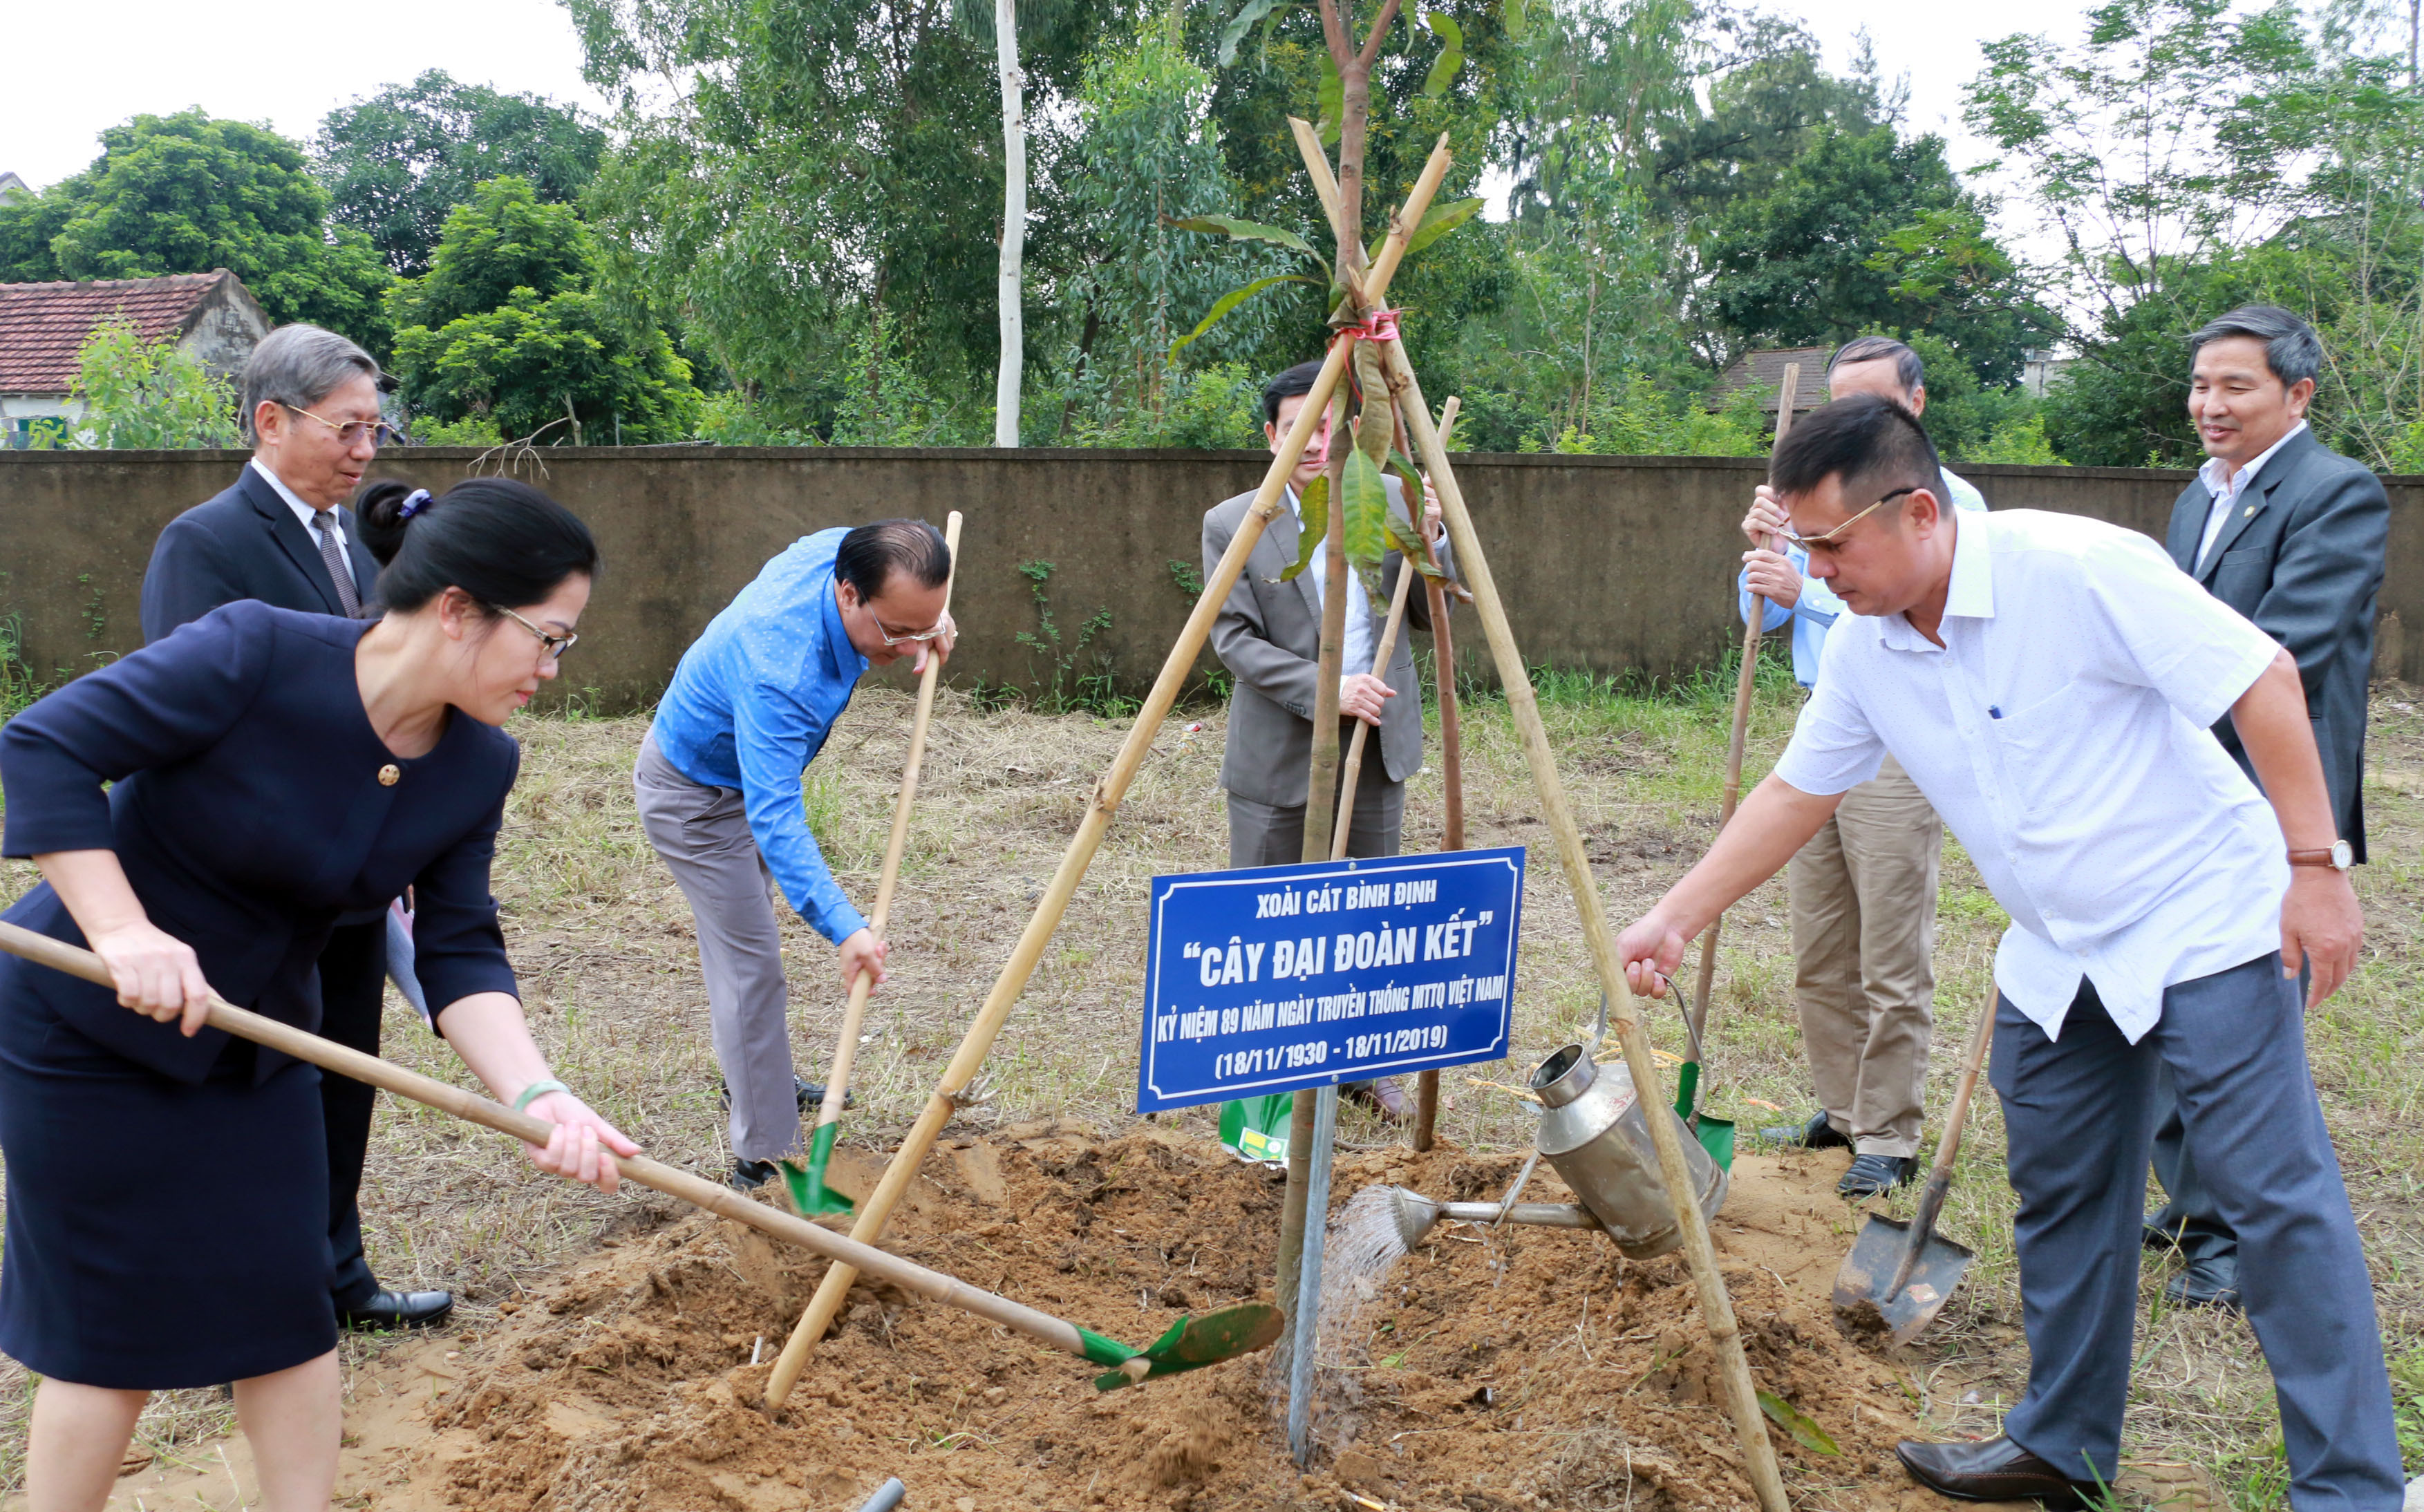 Các đại biểu trồng cây Đại đoàn kết ở Nhà văn hóa khối Hải Giang 1. Ảnh: Mỹ Hà